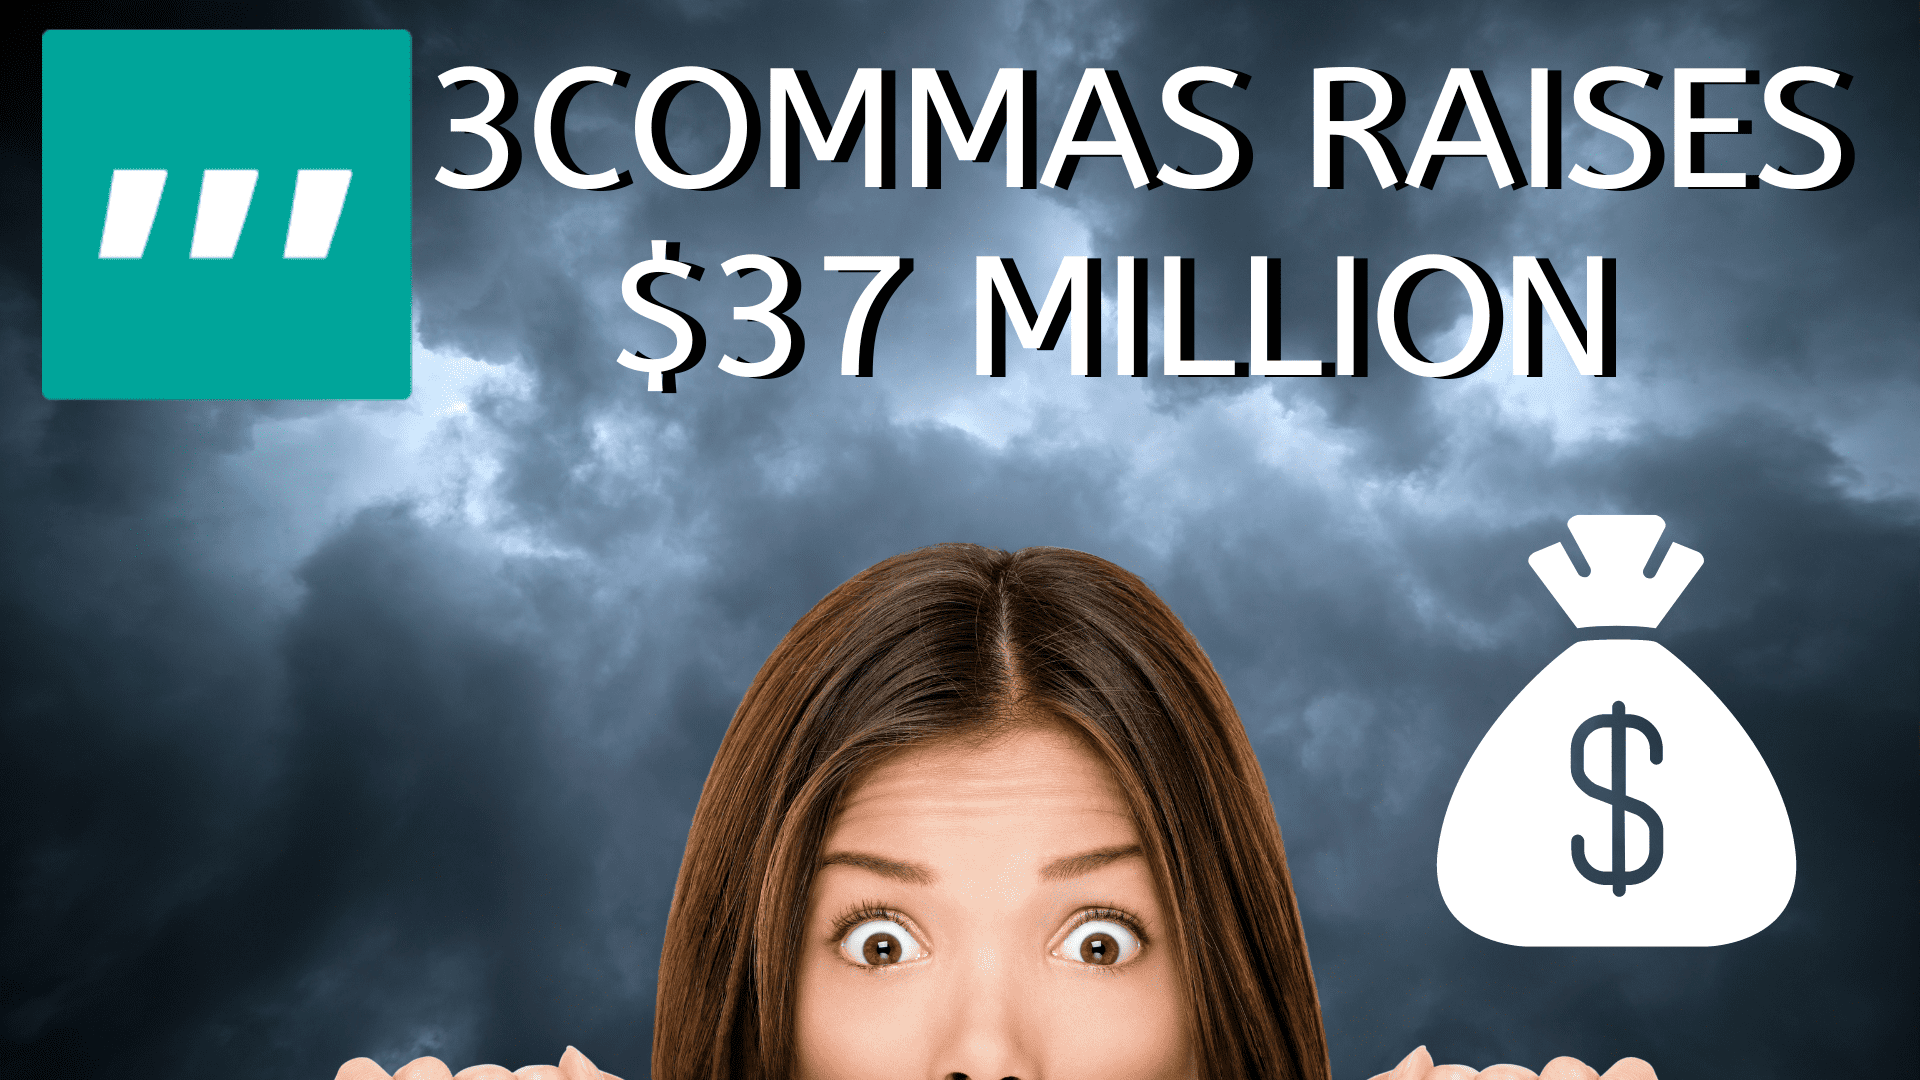 3Commas Raises 37 million dollars